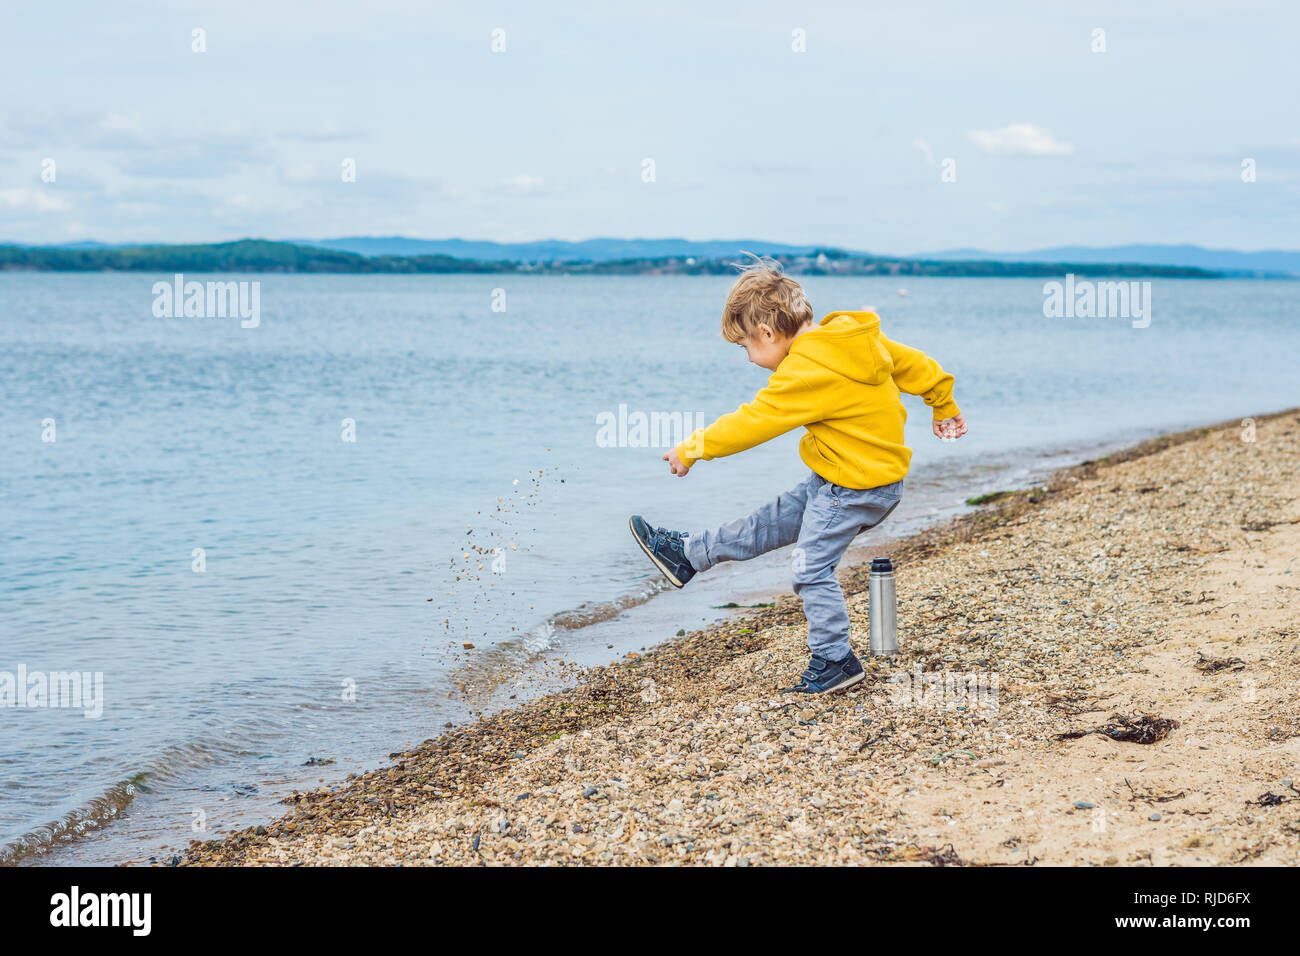 Камни кидают в воду. Брошенный мальчик. Кидание камушков в воду. Мальчик кидает камень в море. Мальчик кидает камень в воду.